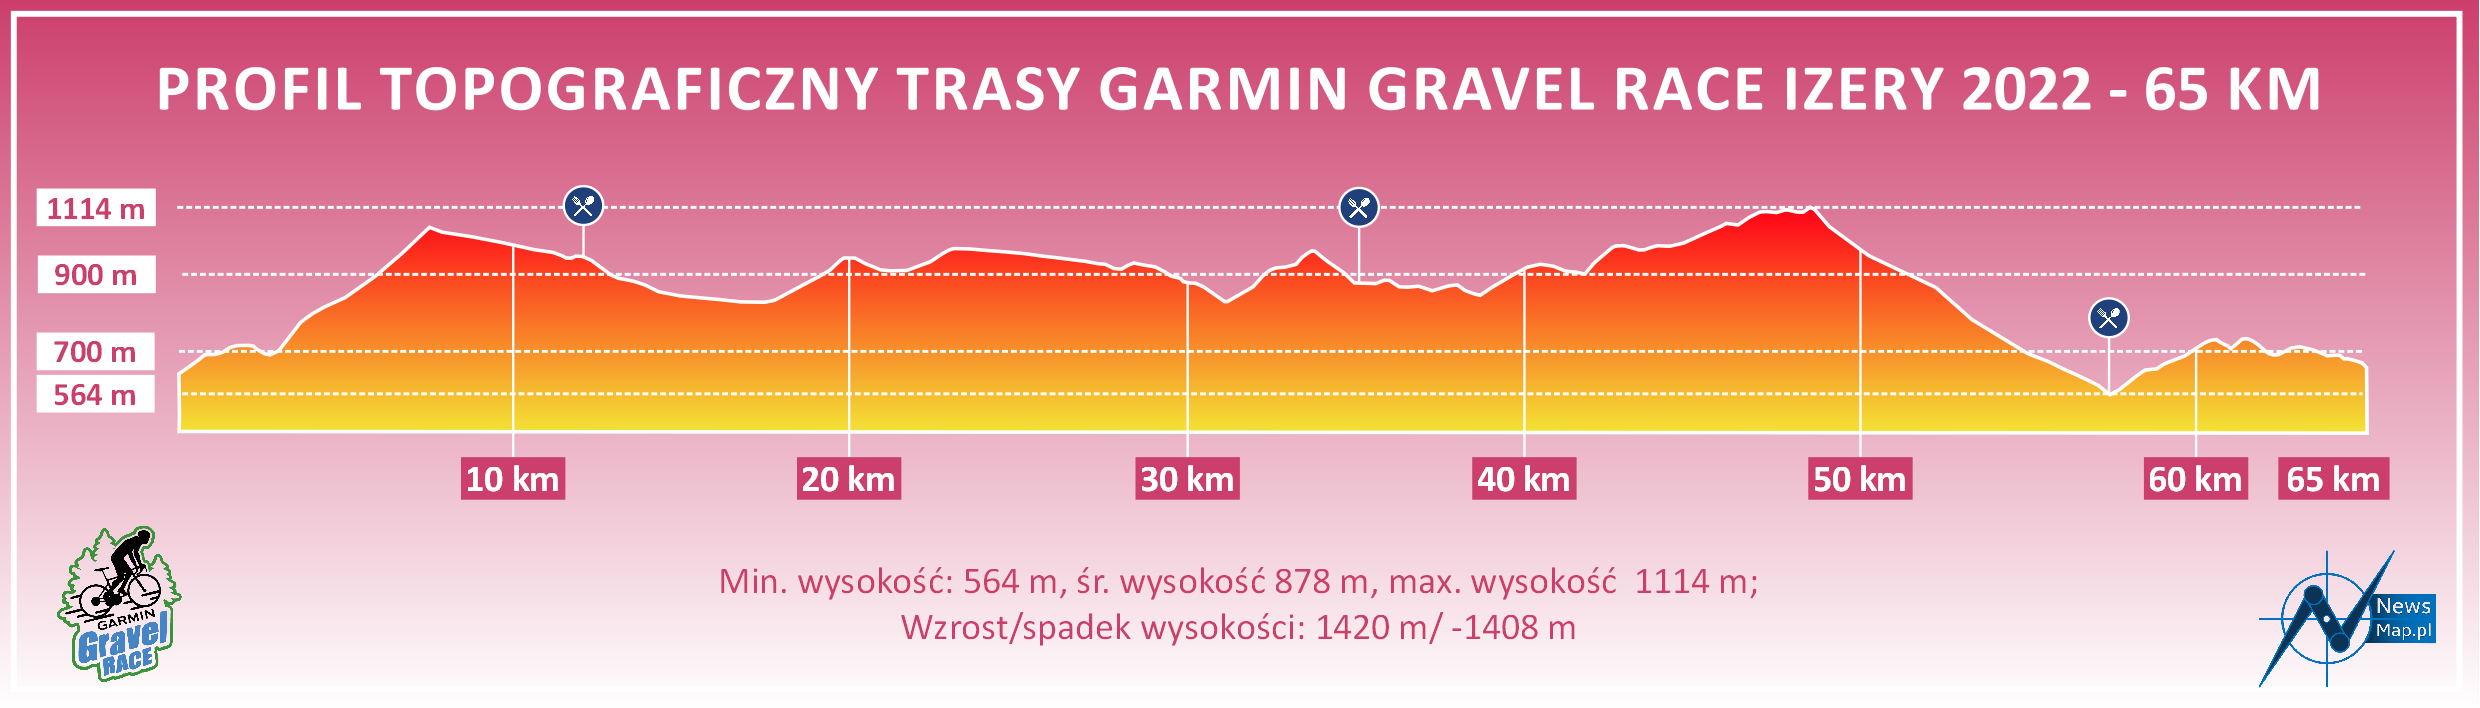 Garmin Gravel Race Izery 2022 - 65 km - profil topograficzny